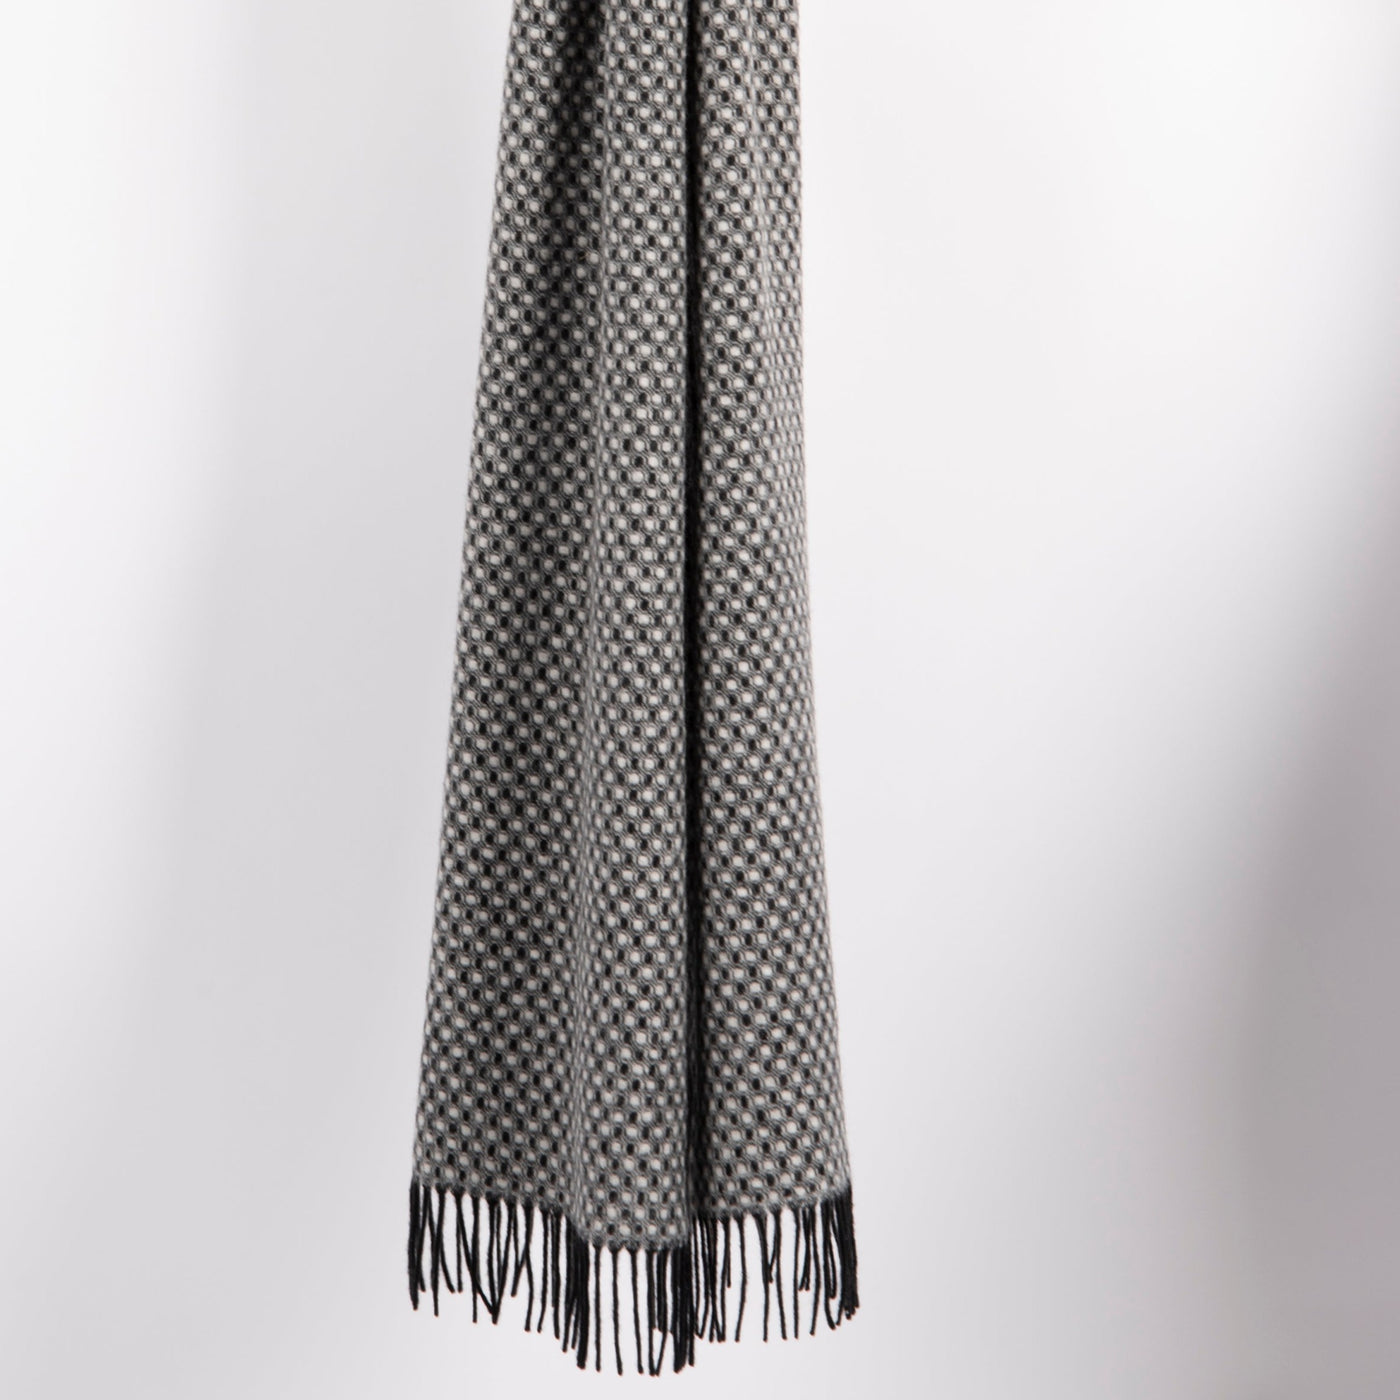 Frimino Lugano skjerf i 100% lammeull i elegant prikkete mønster i sort og hvitt med frynser